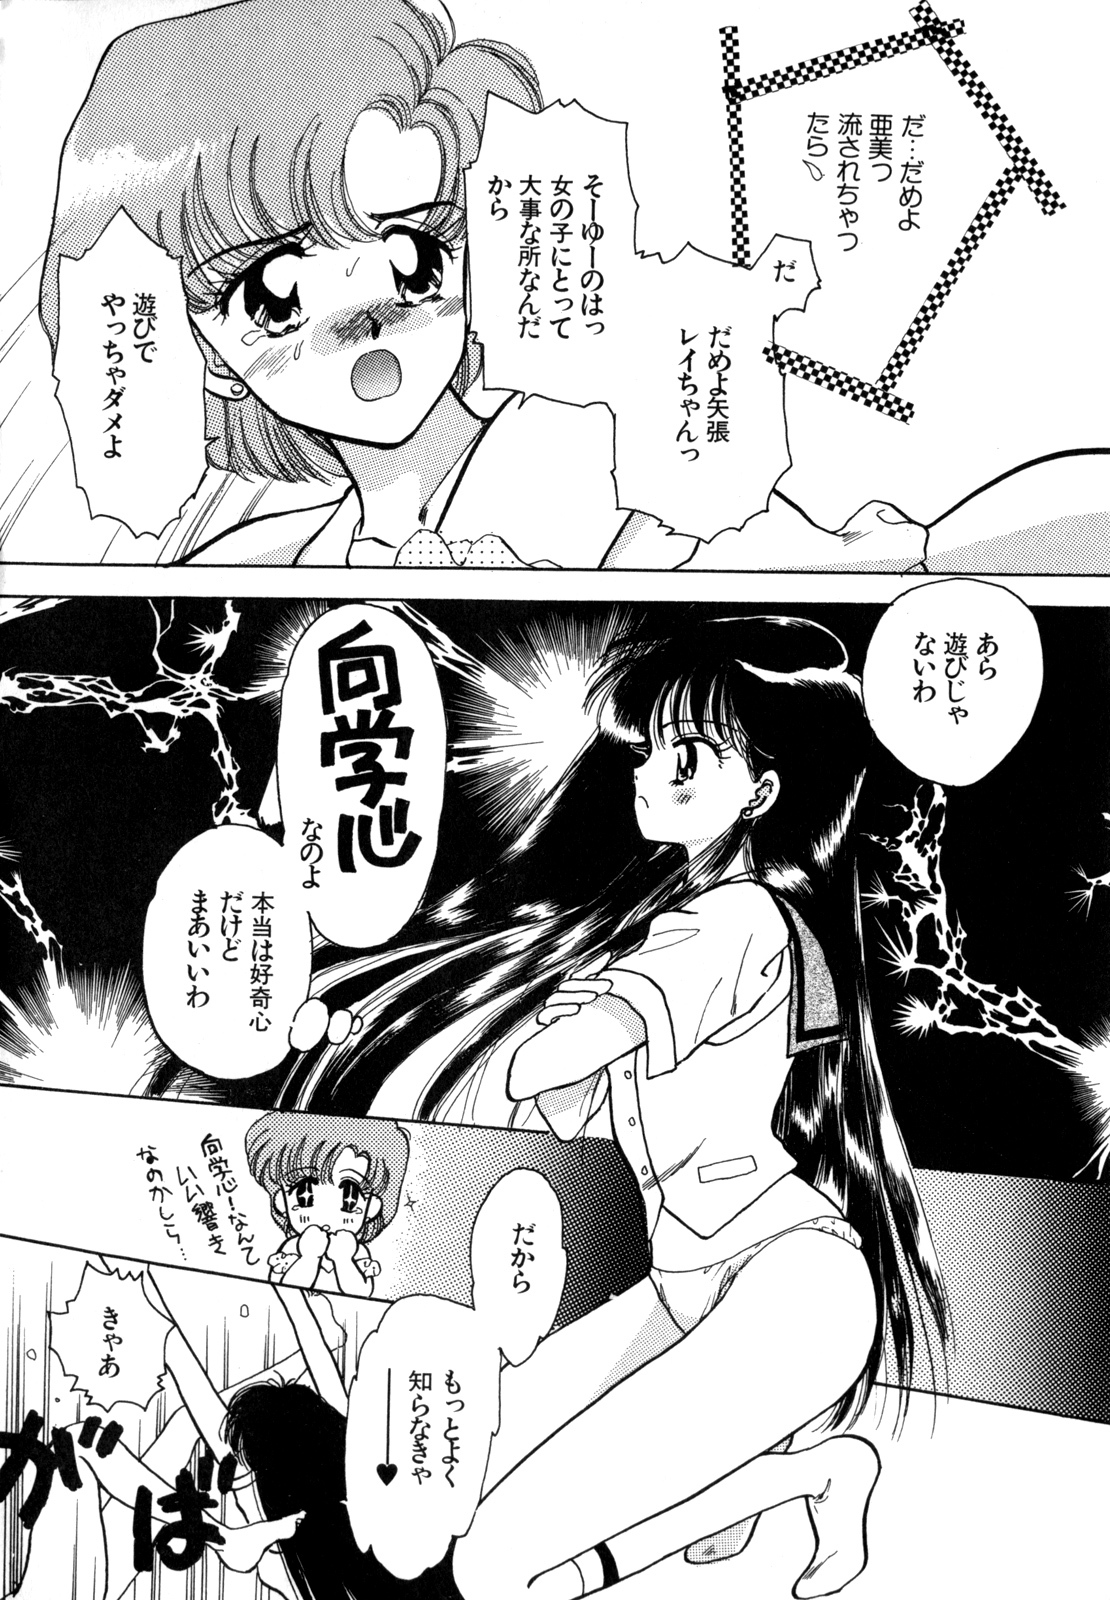 [Anthology] Lunatic Party 4 (Bishoujo Senshi Sailor Moon) page 23 full